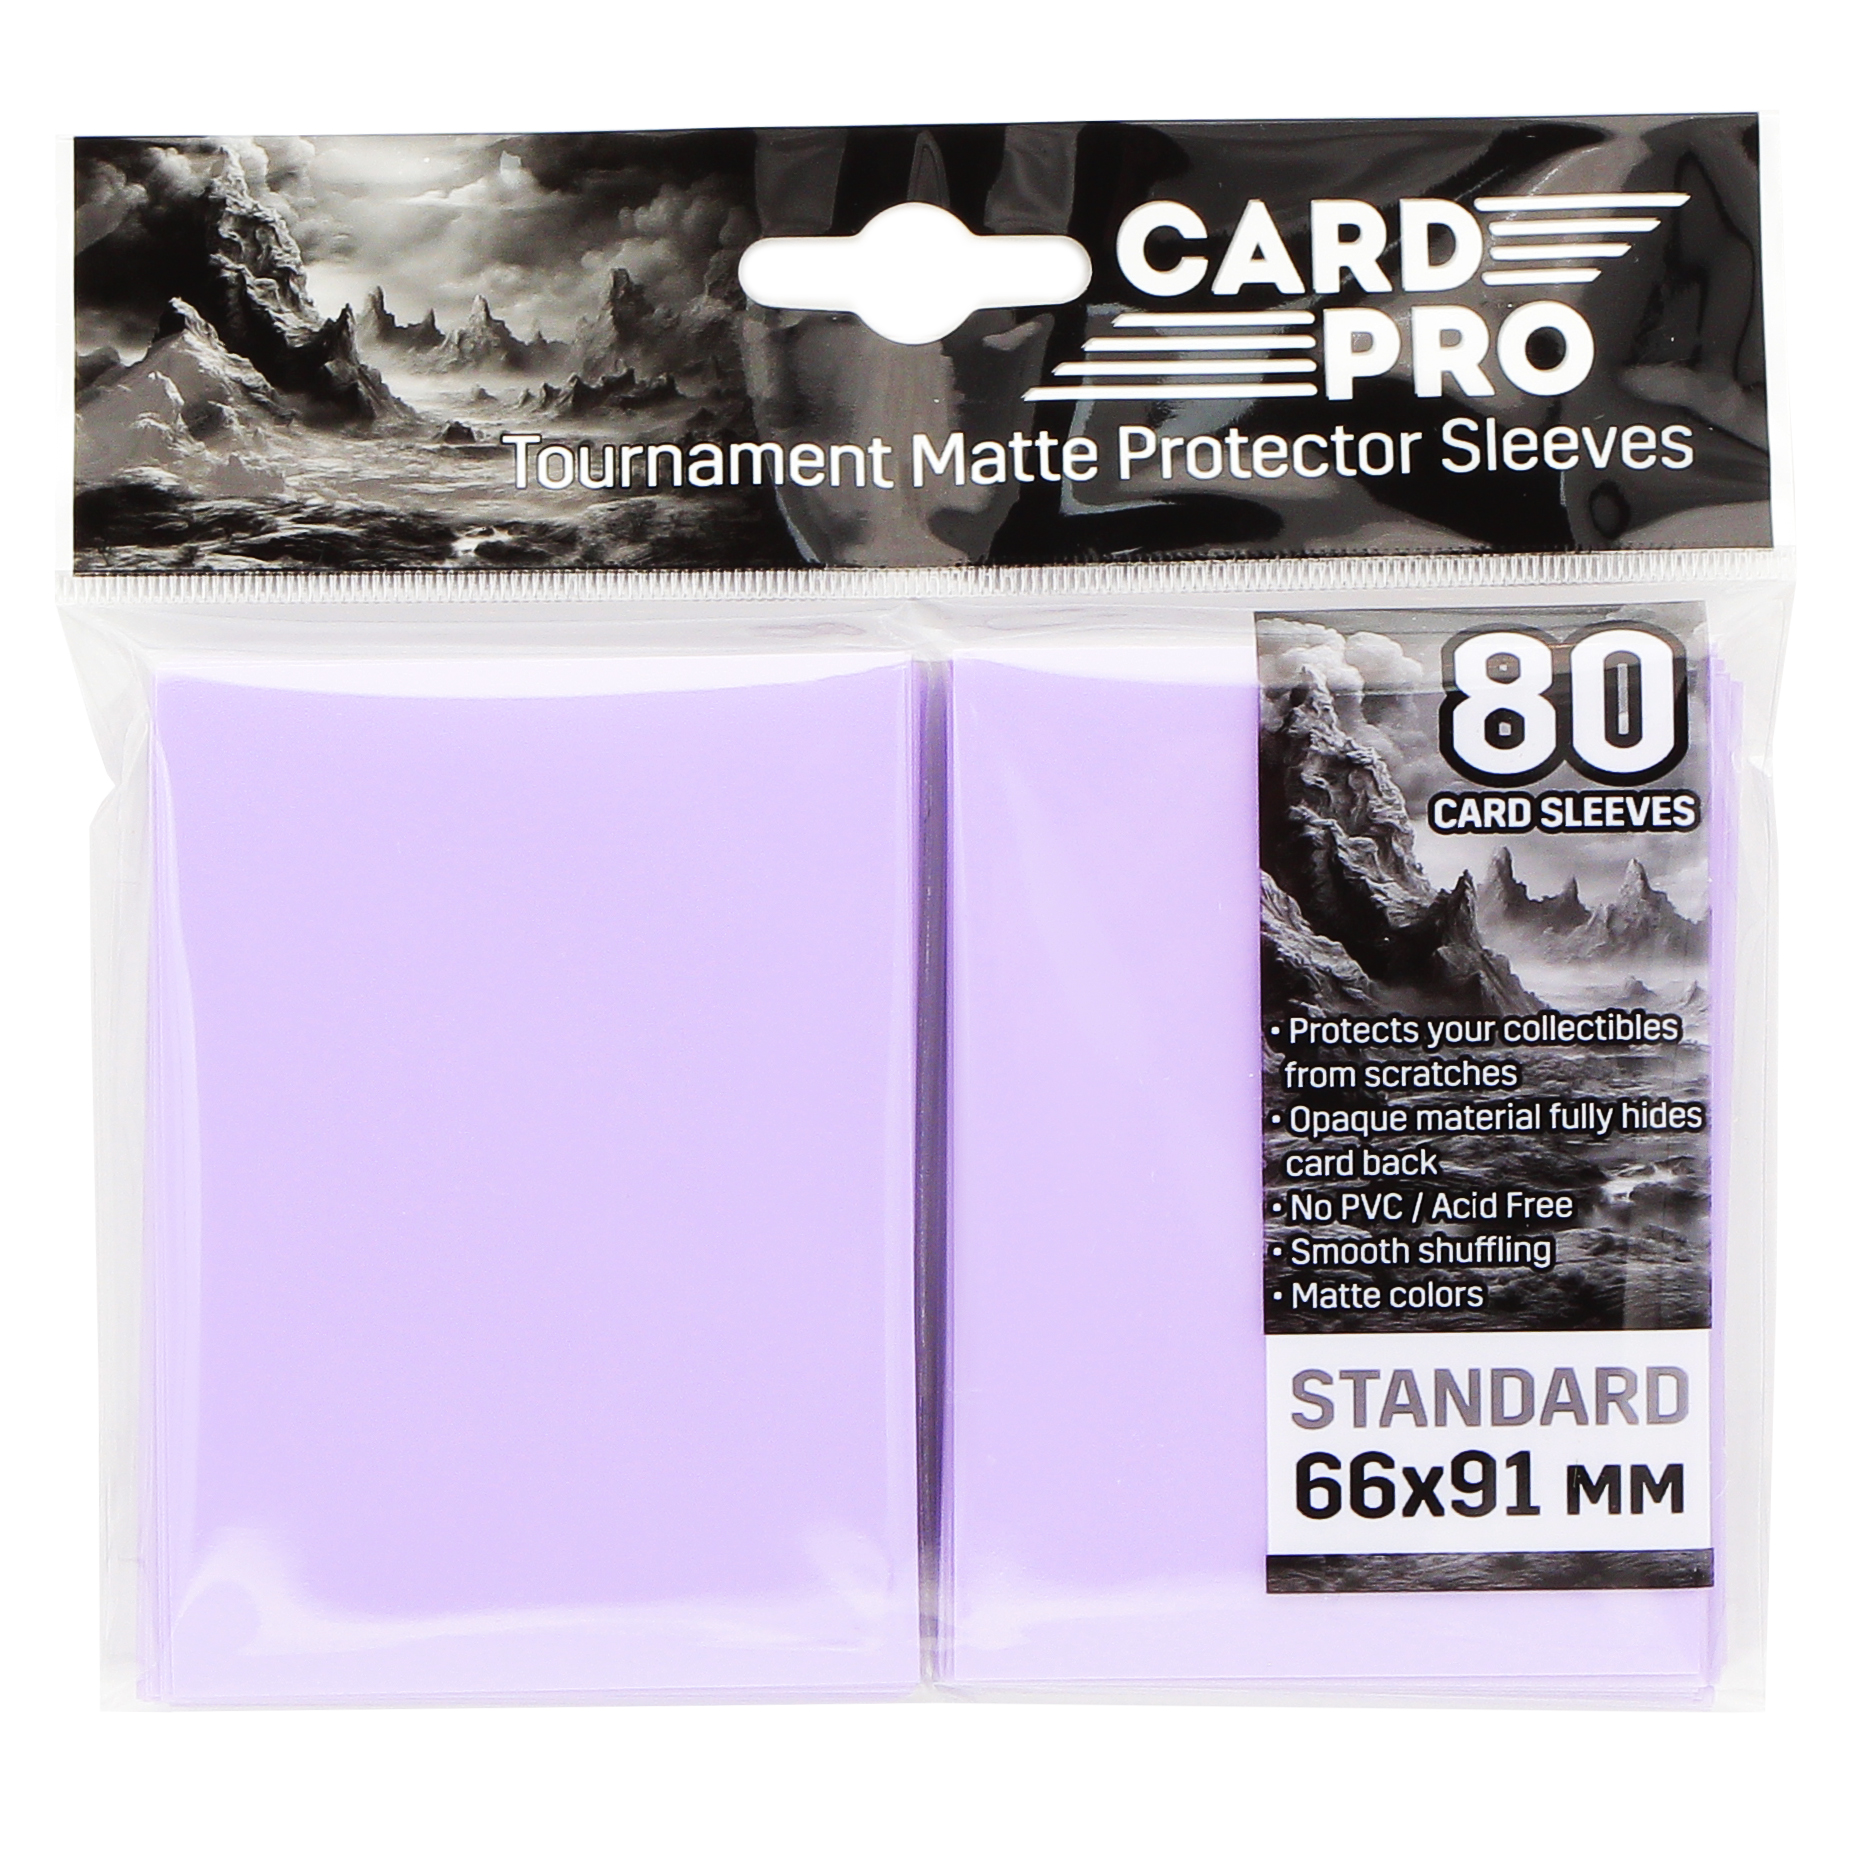 Протекторы для ККИ Card-Pro розовые 66x91 мм, 80 шт.